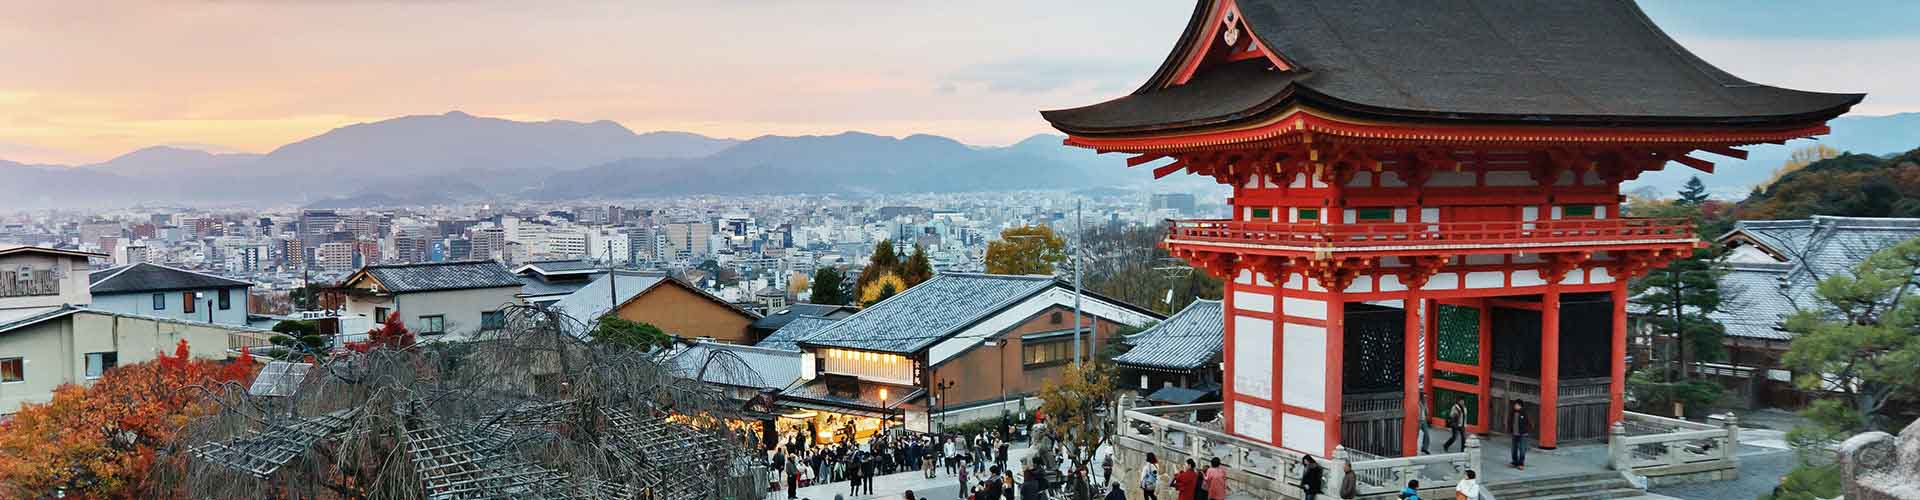 Resultado de imagen para kioto"